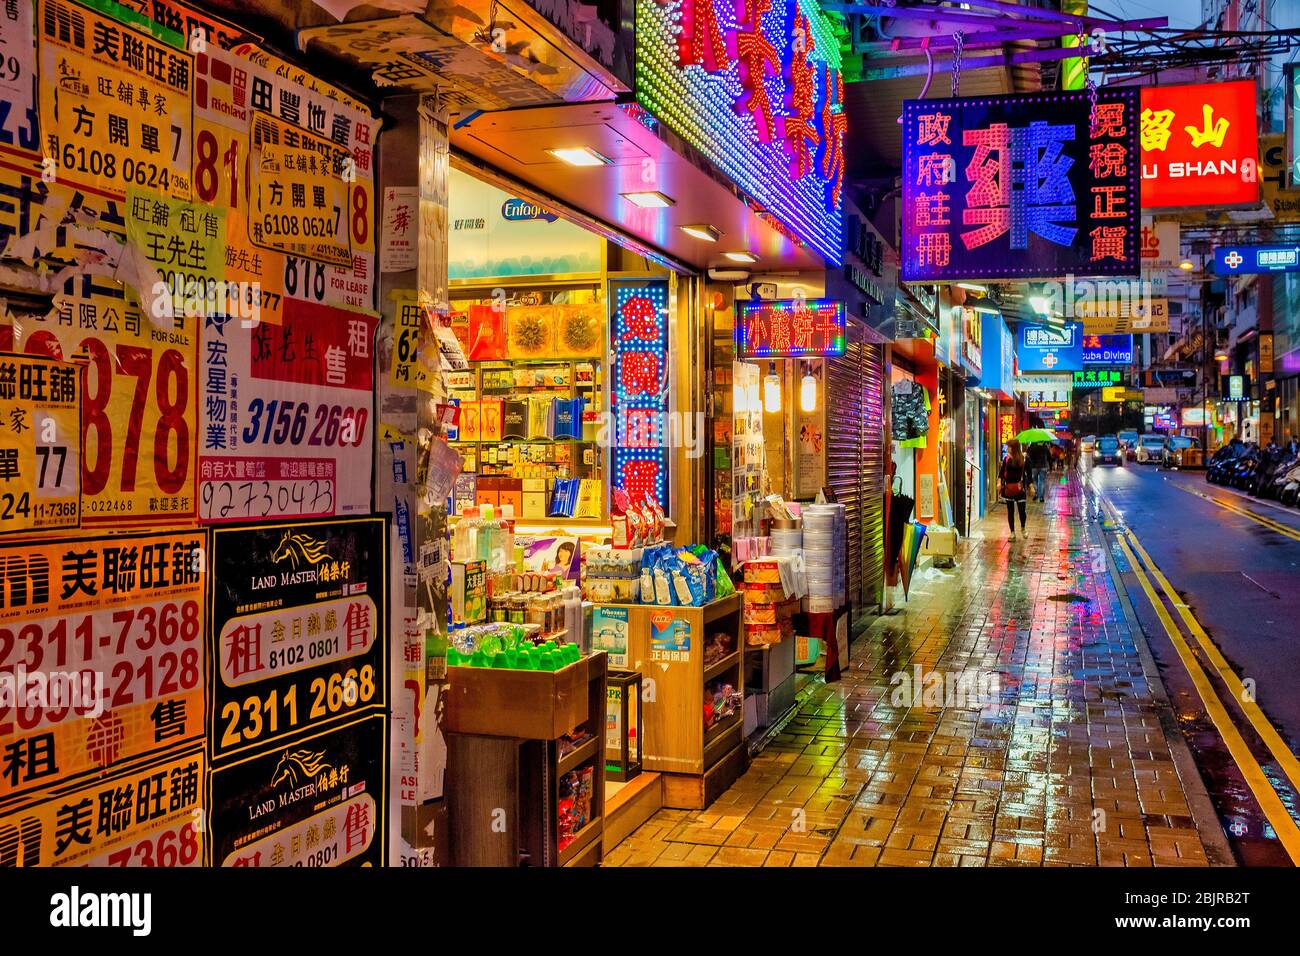 Austin Road, Tsim Sha Tsui, Kowloon, Hong Kong, China, Stock Photo